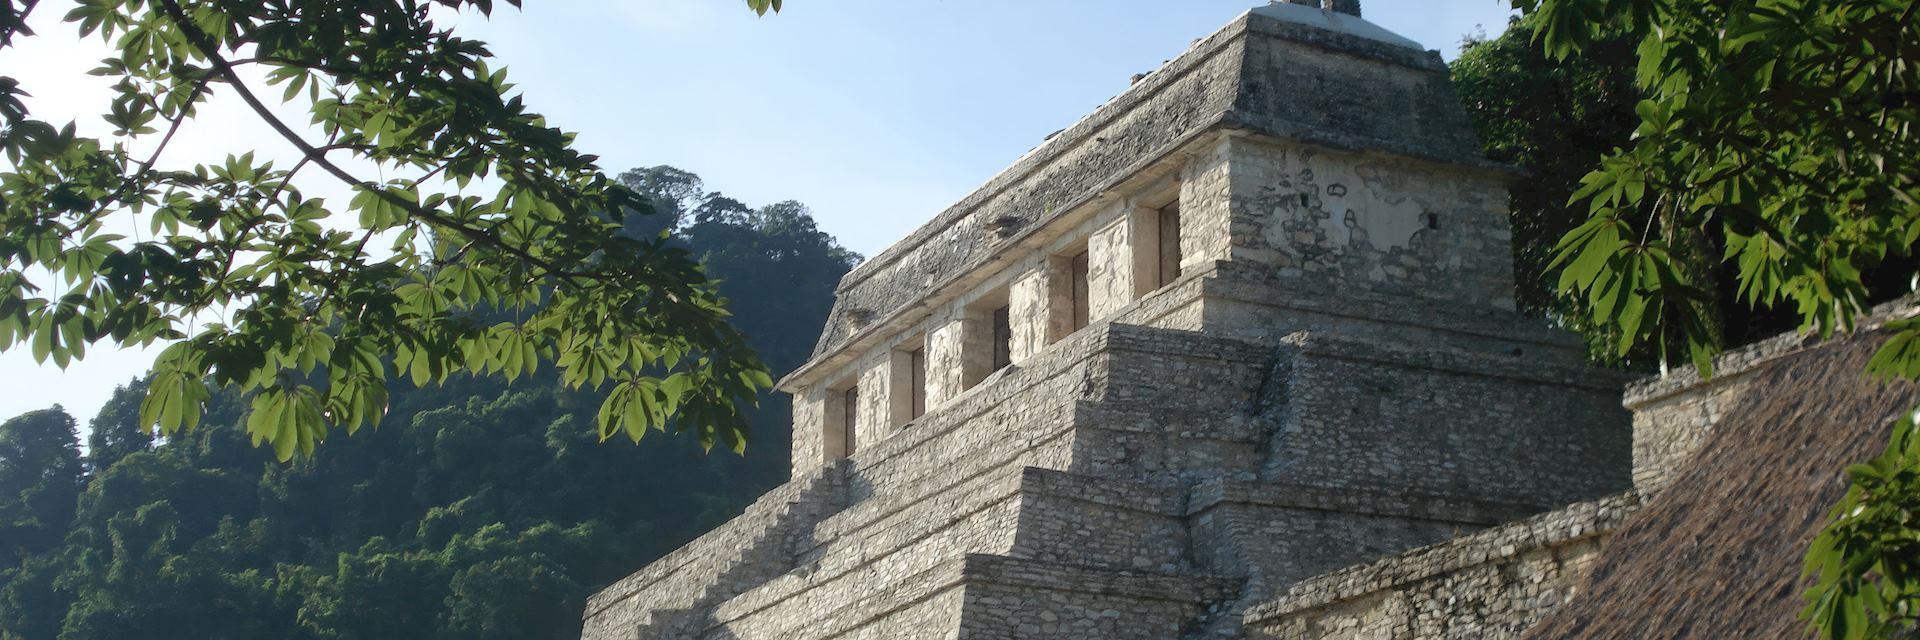 Maya pyramid at Palenque